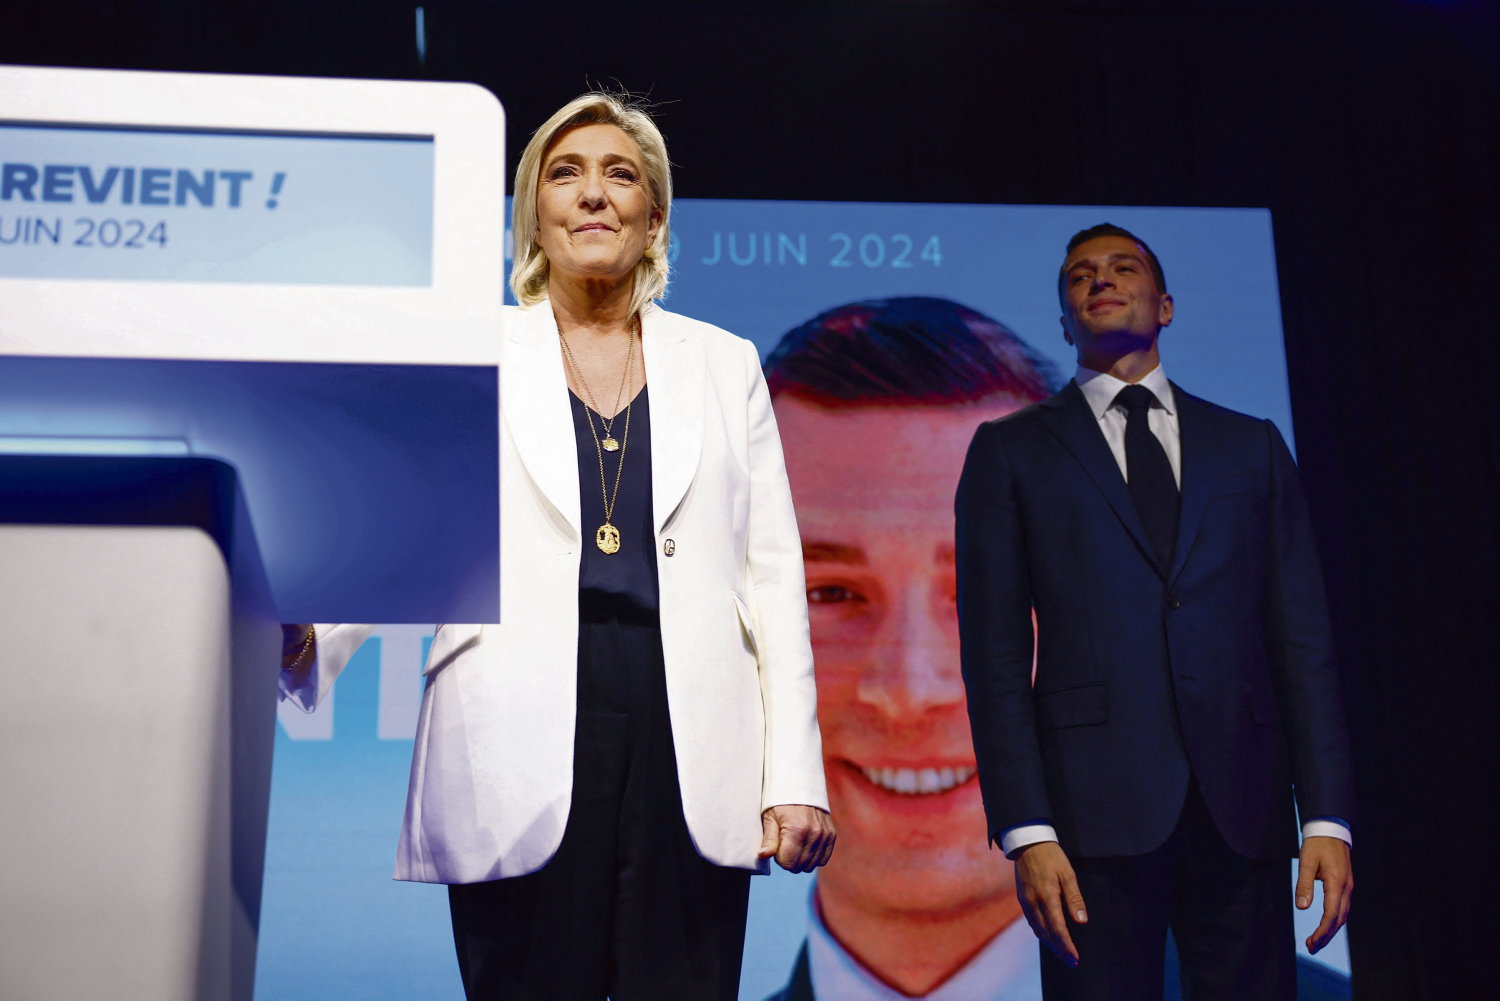 Jordan Bardella et Marine Le Pen, à l'annonce des résultats le 9 juin 2024, à Paris.